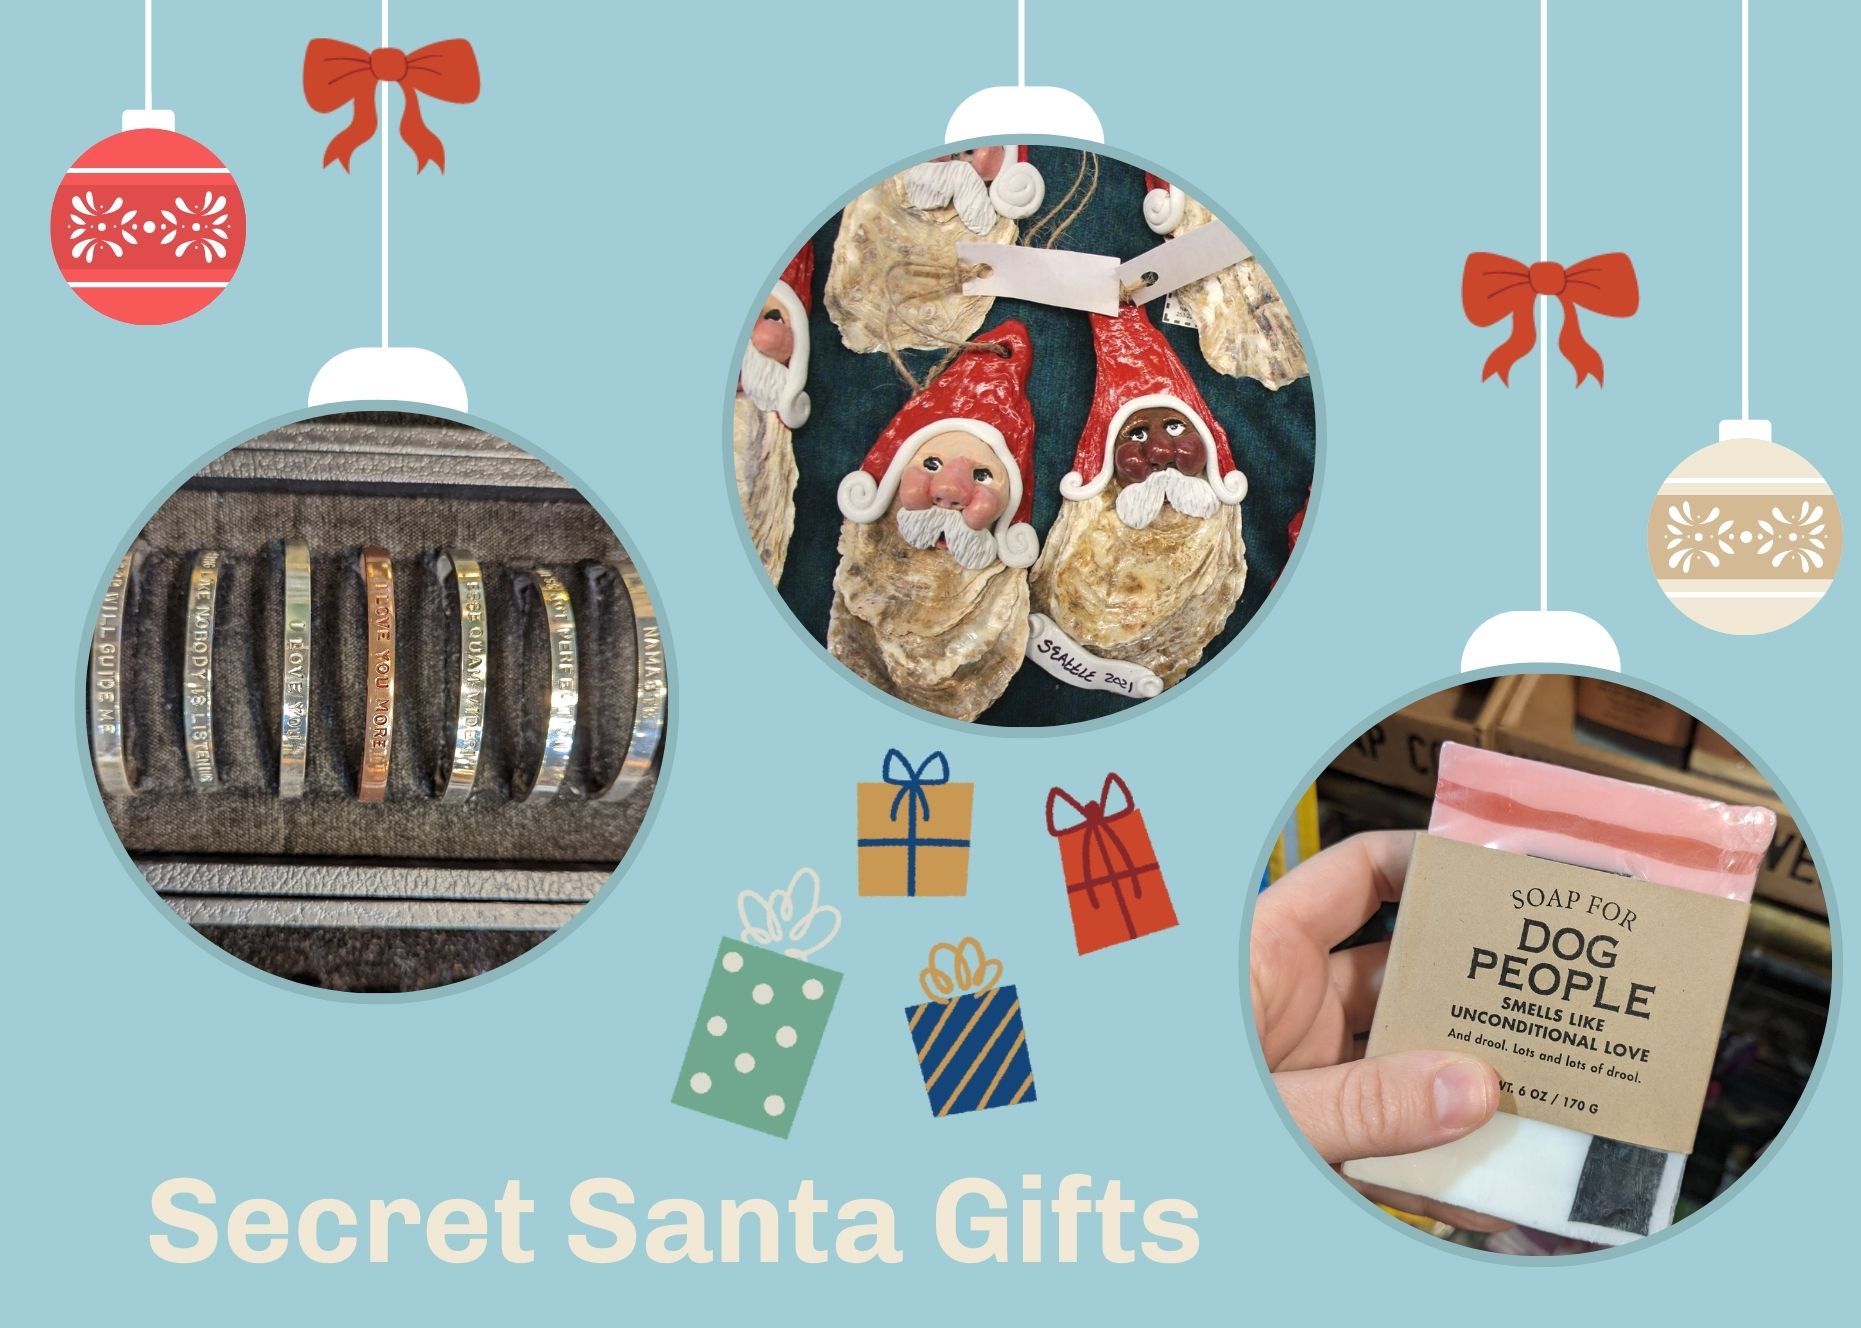 Last minute gift guide for white elephant or secret santa